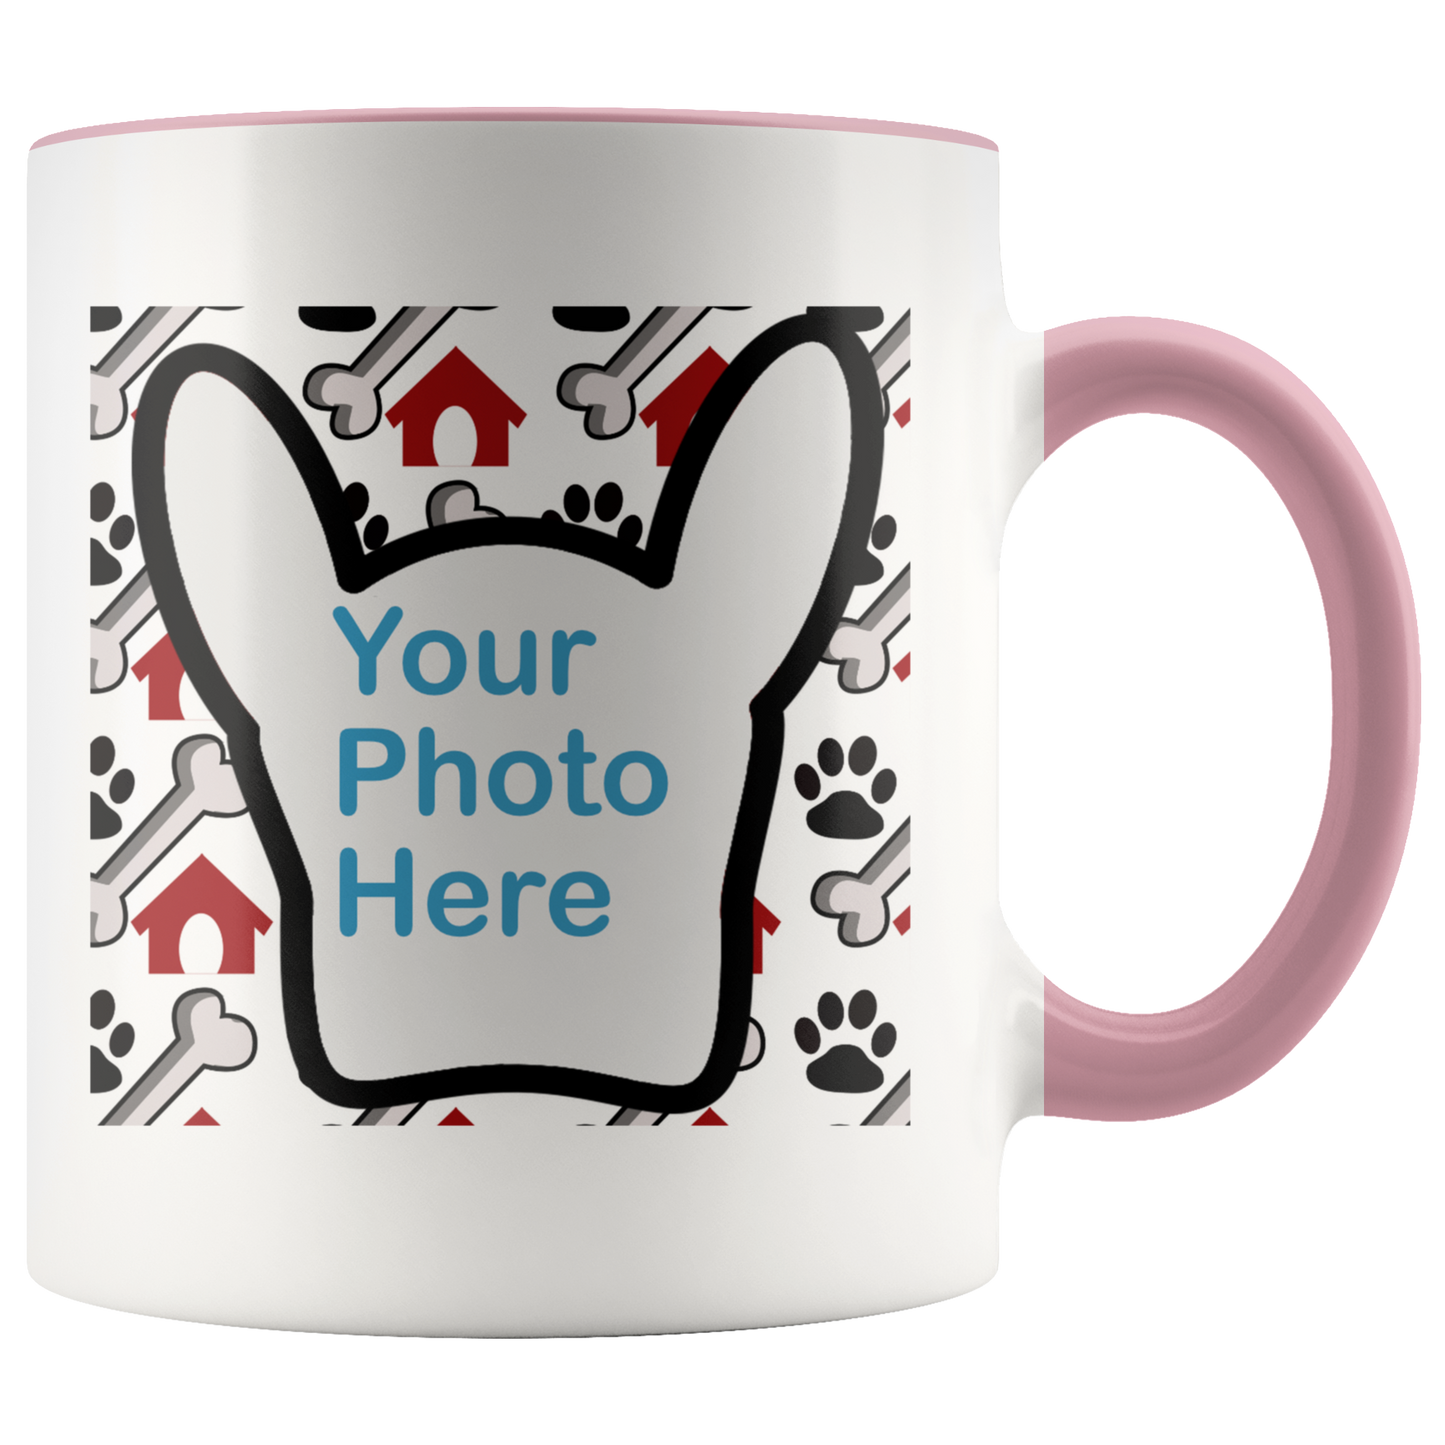 Personalized Dog Photo Mug